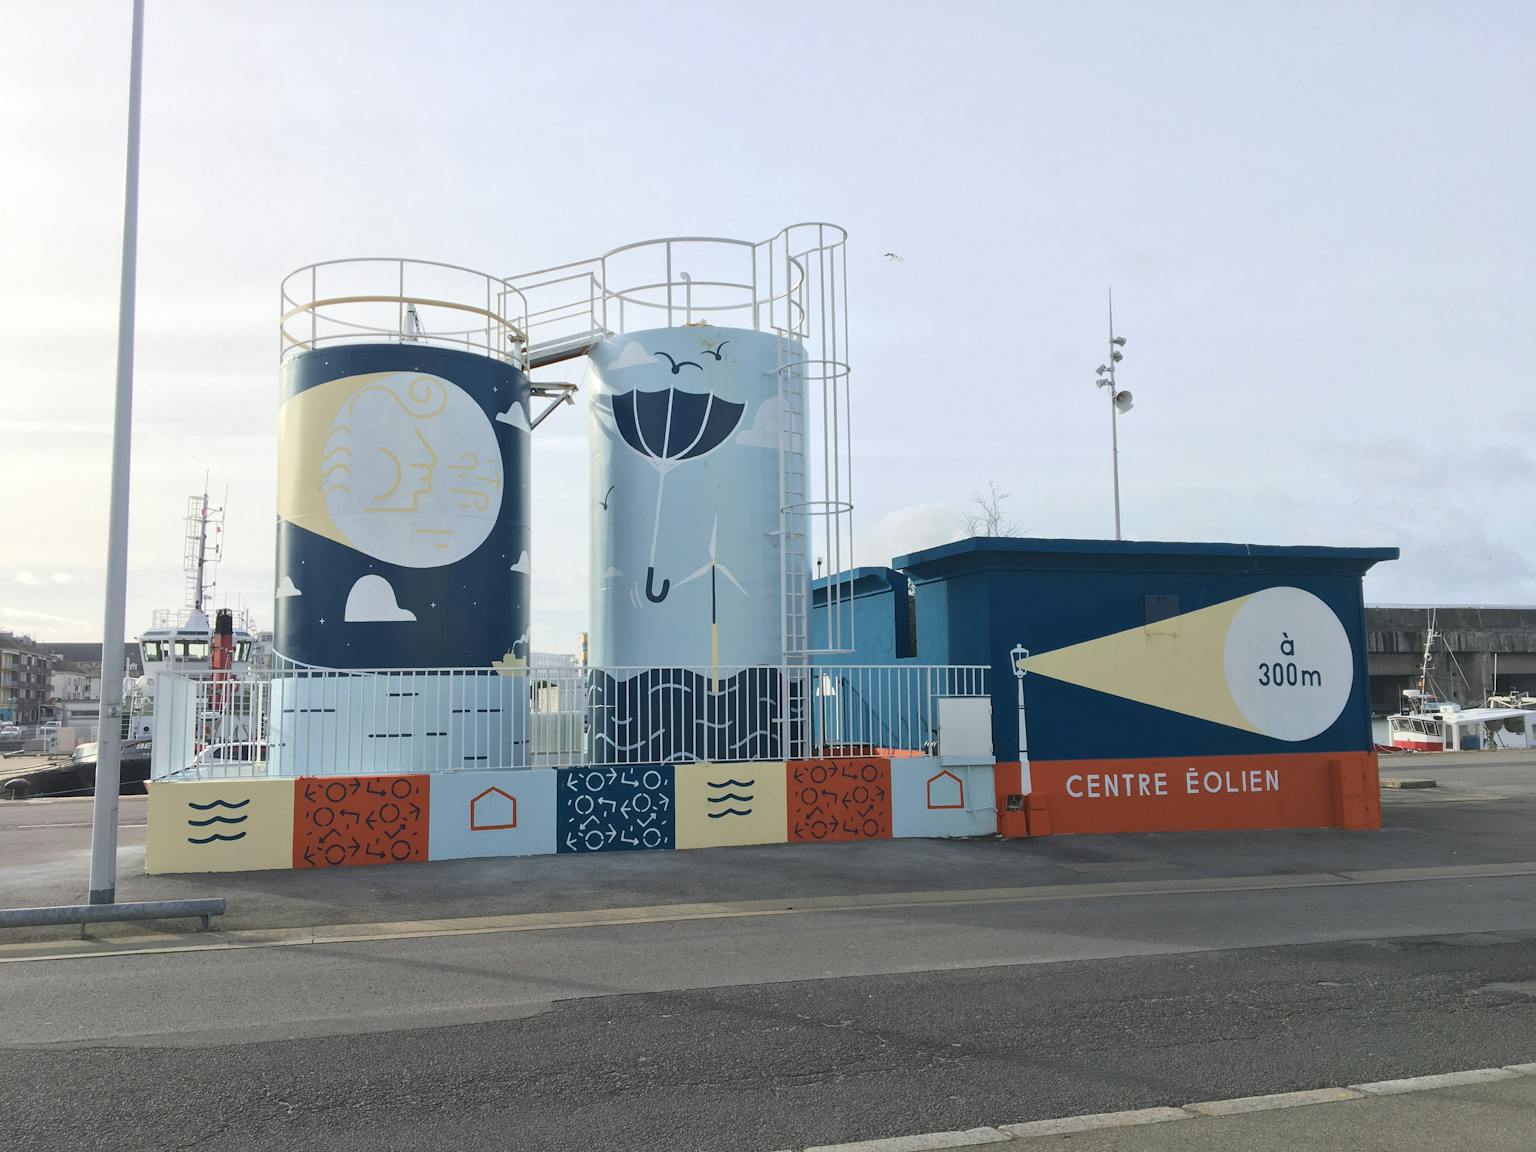 Katra signe la base sous-marine de Saint-nazaire grâce au street art.